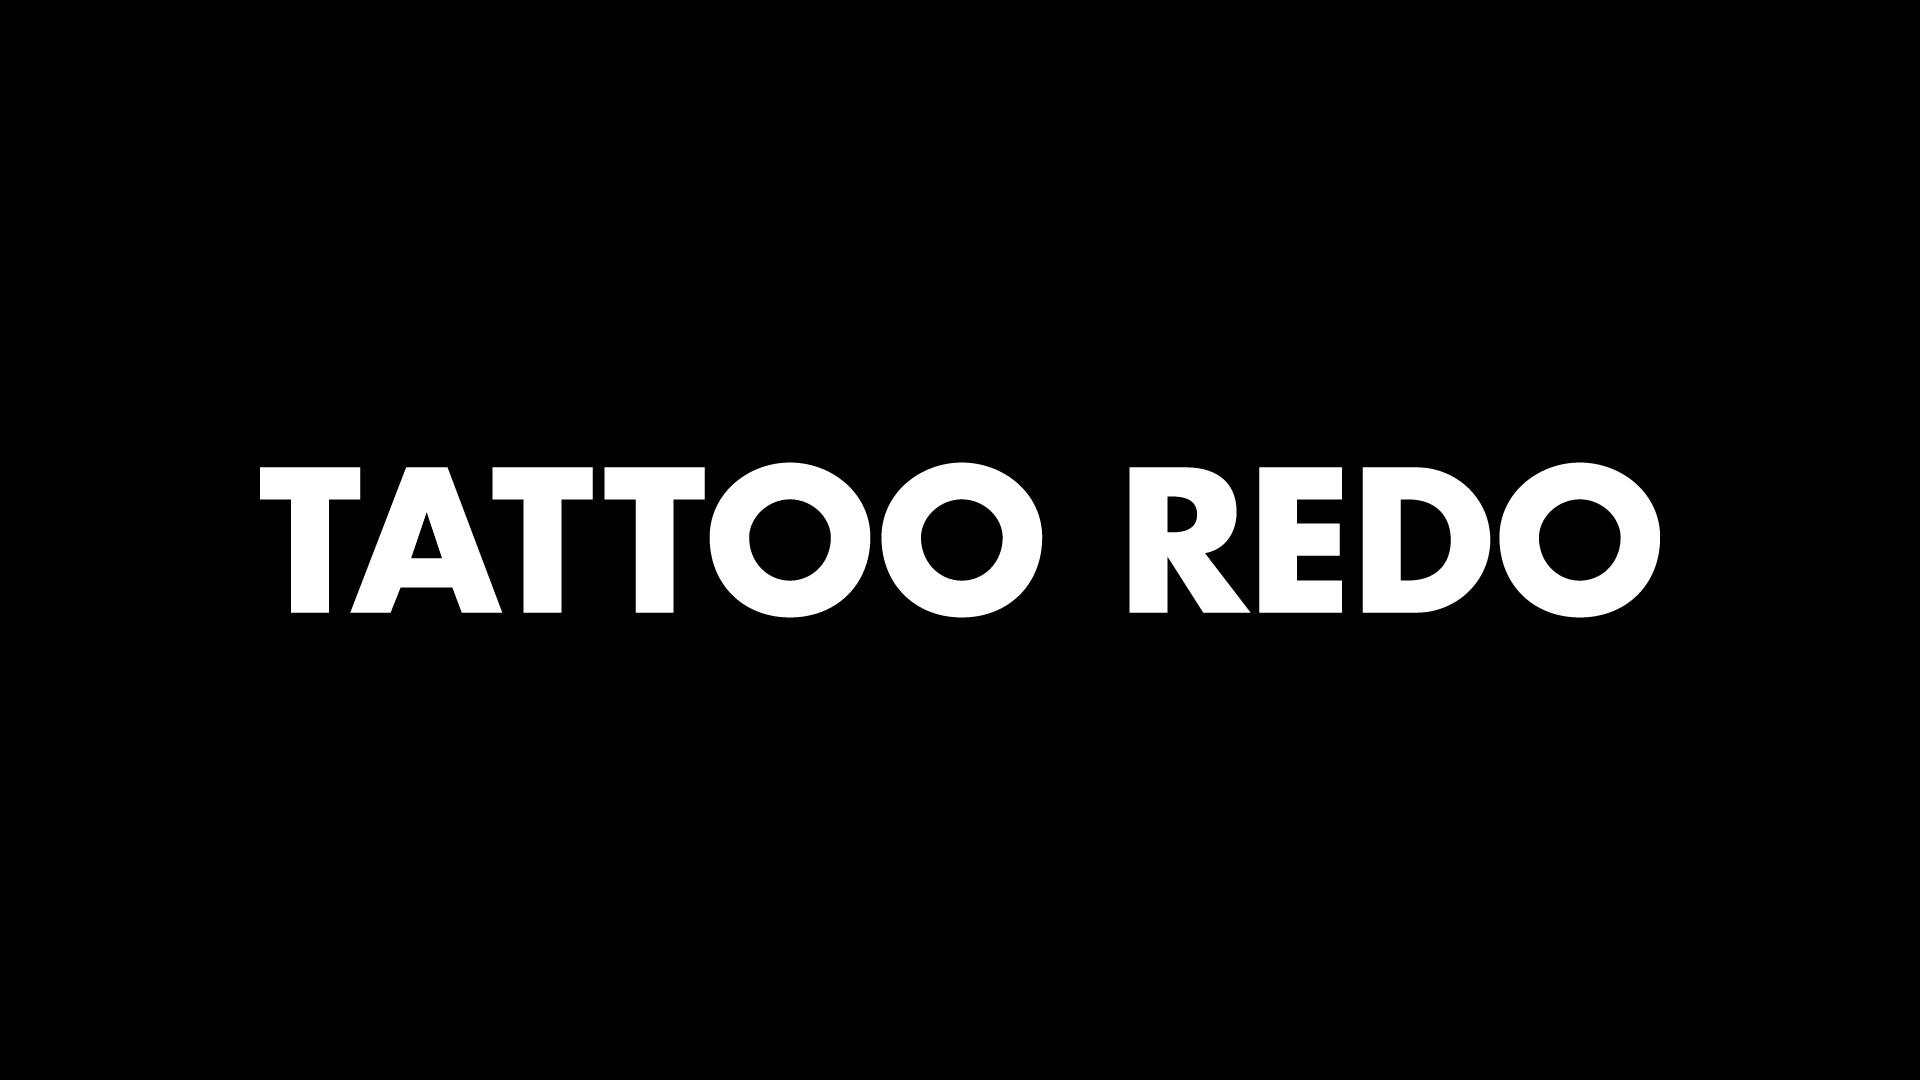 Tattoo Redo